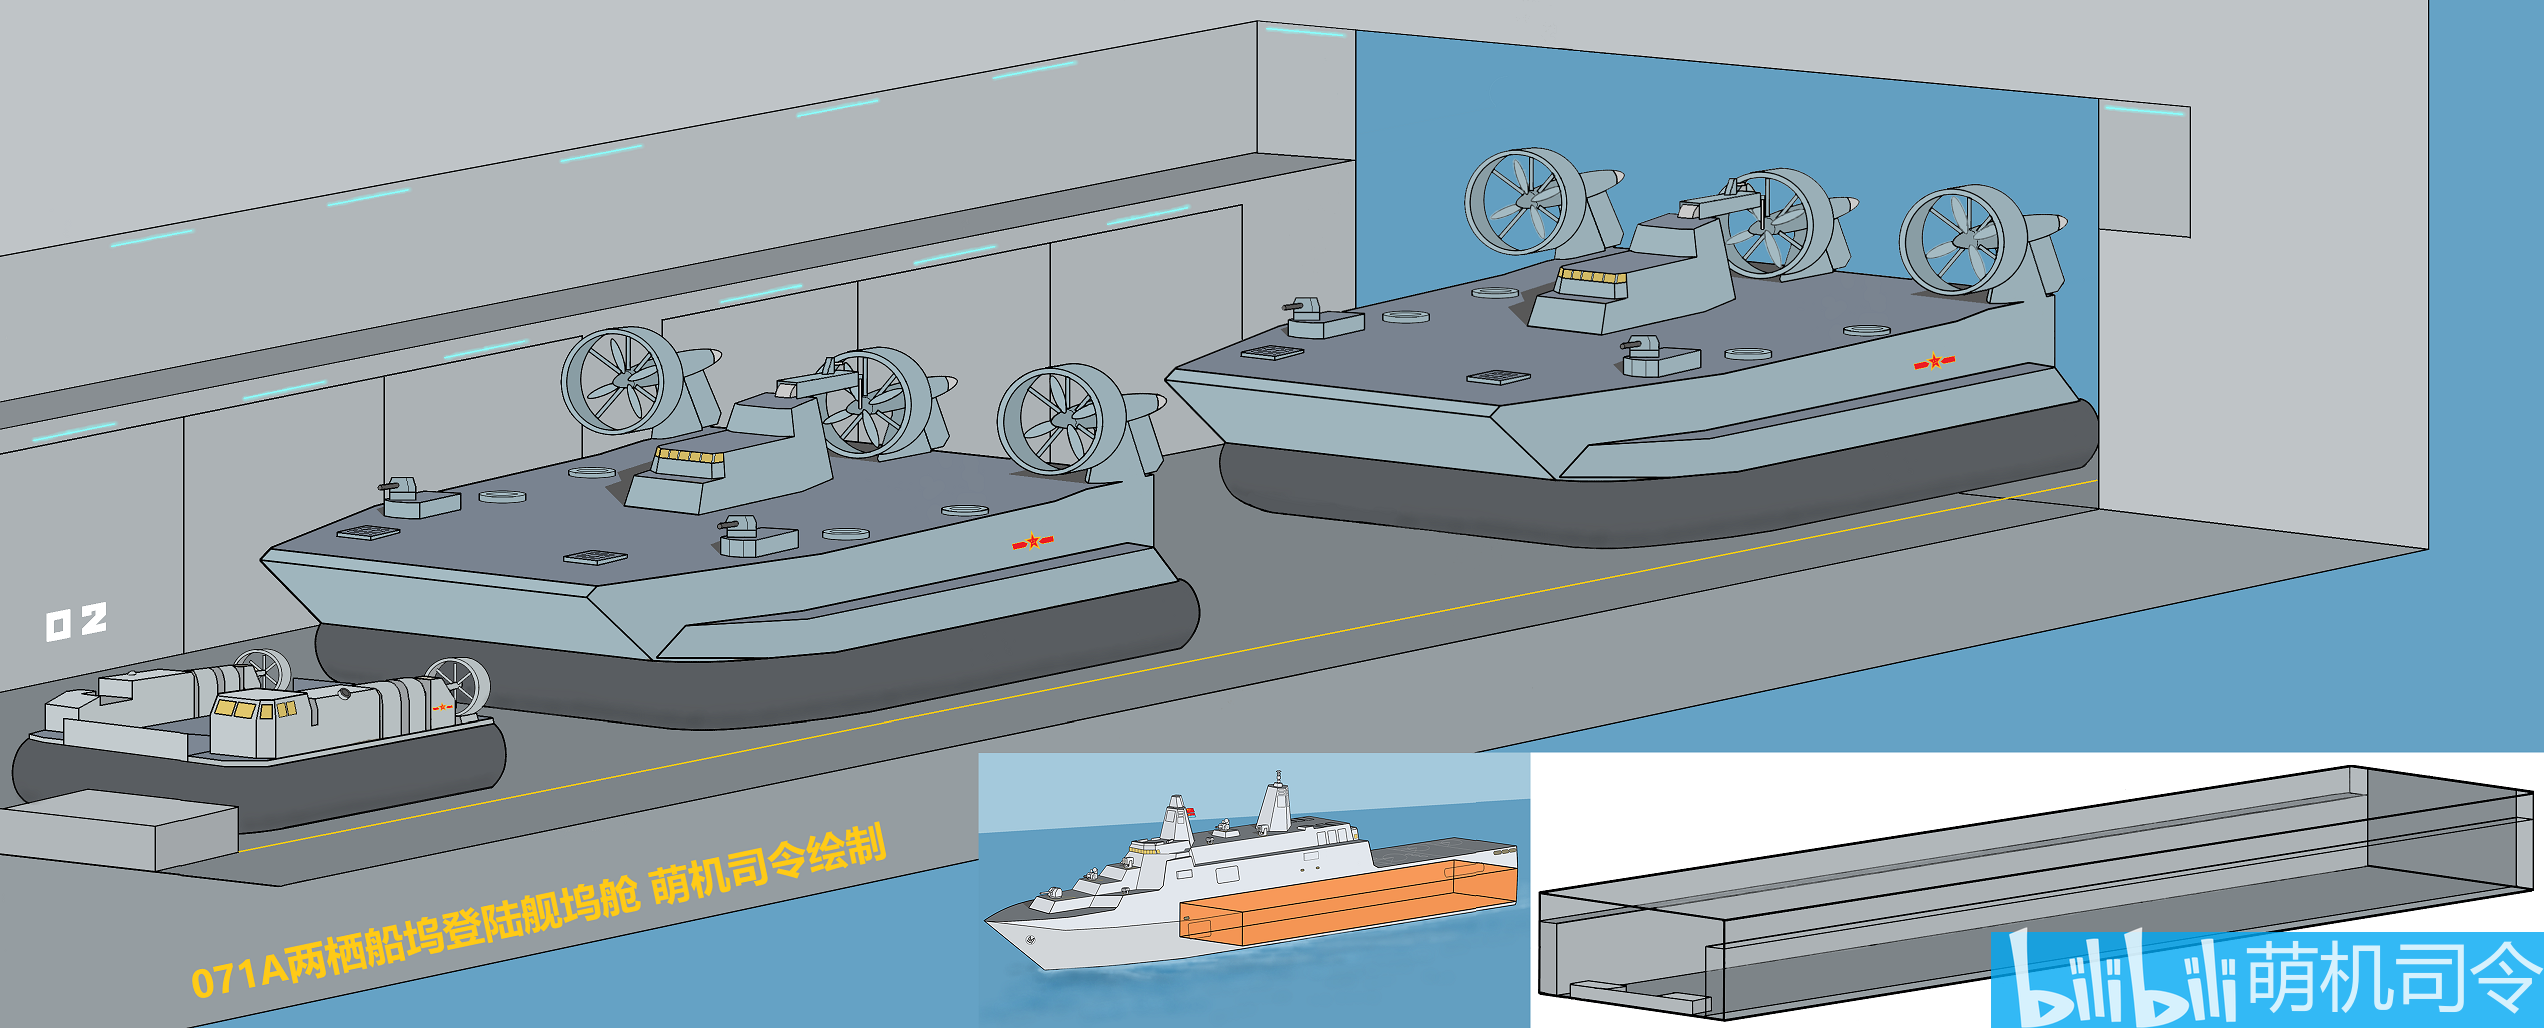 关于071a型船坞登陆舰的改进下